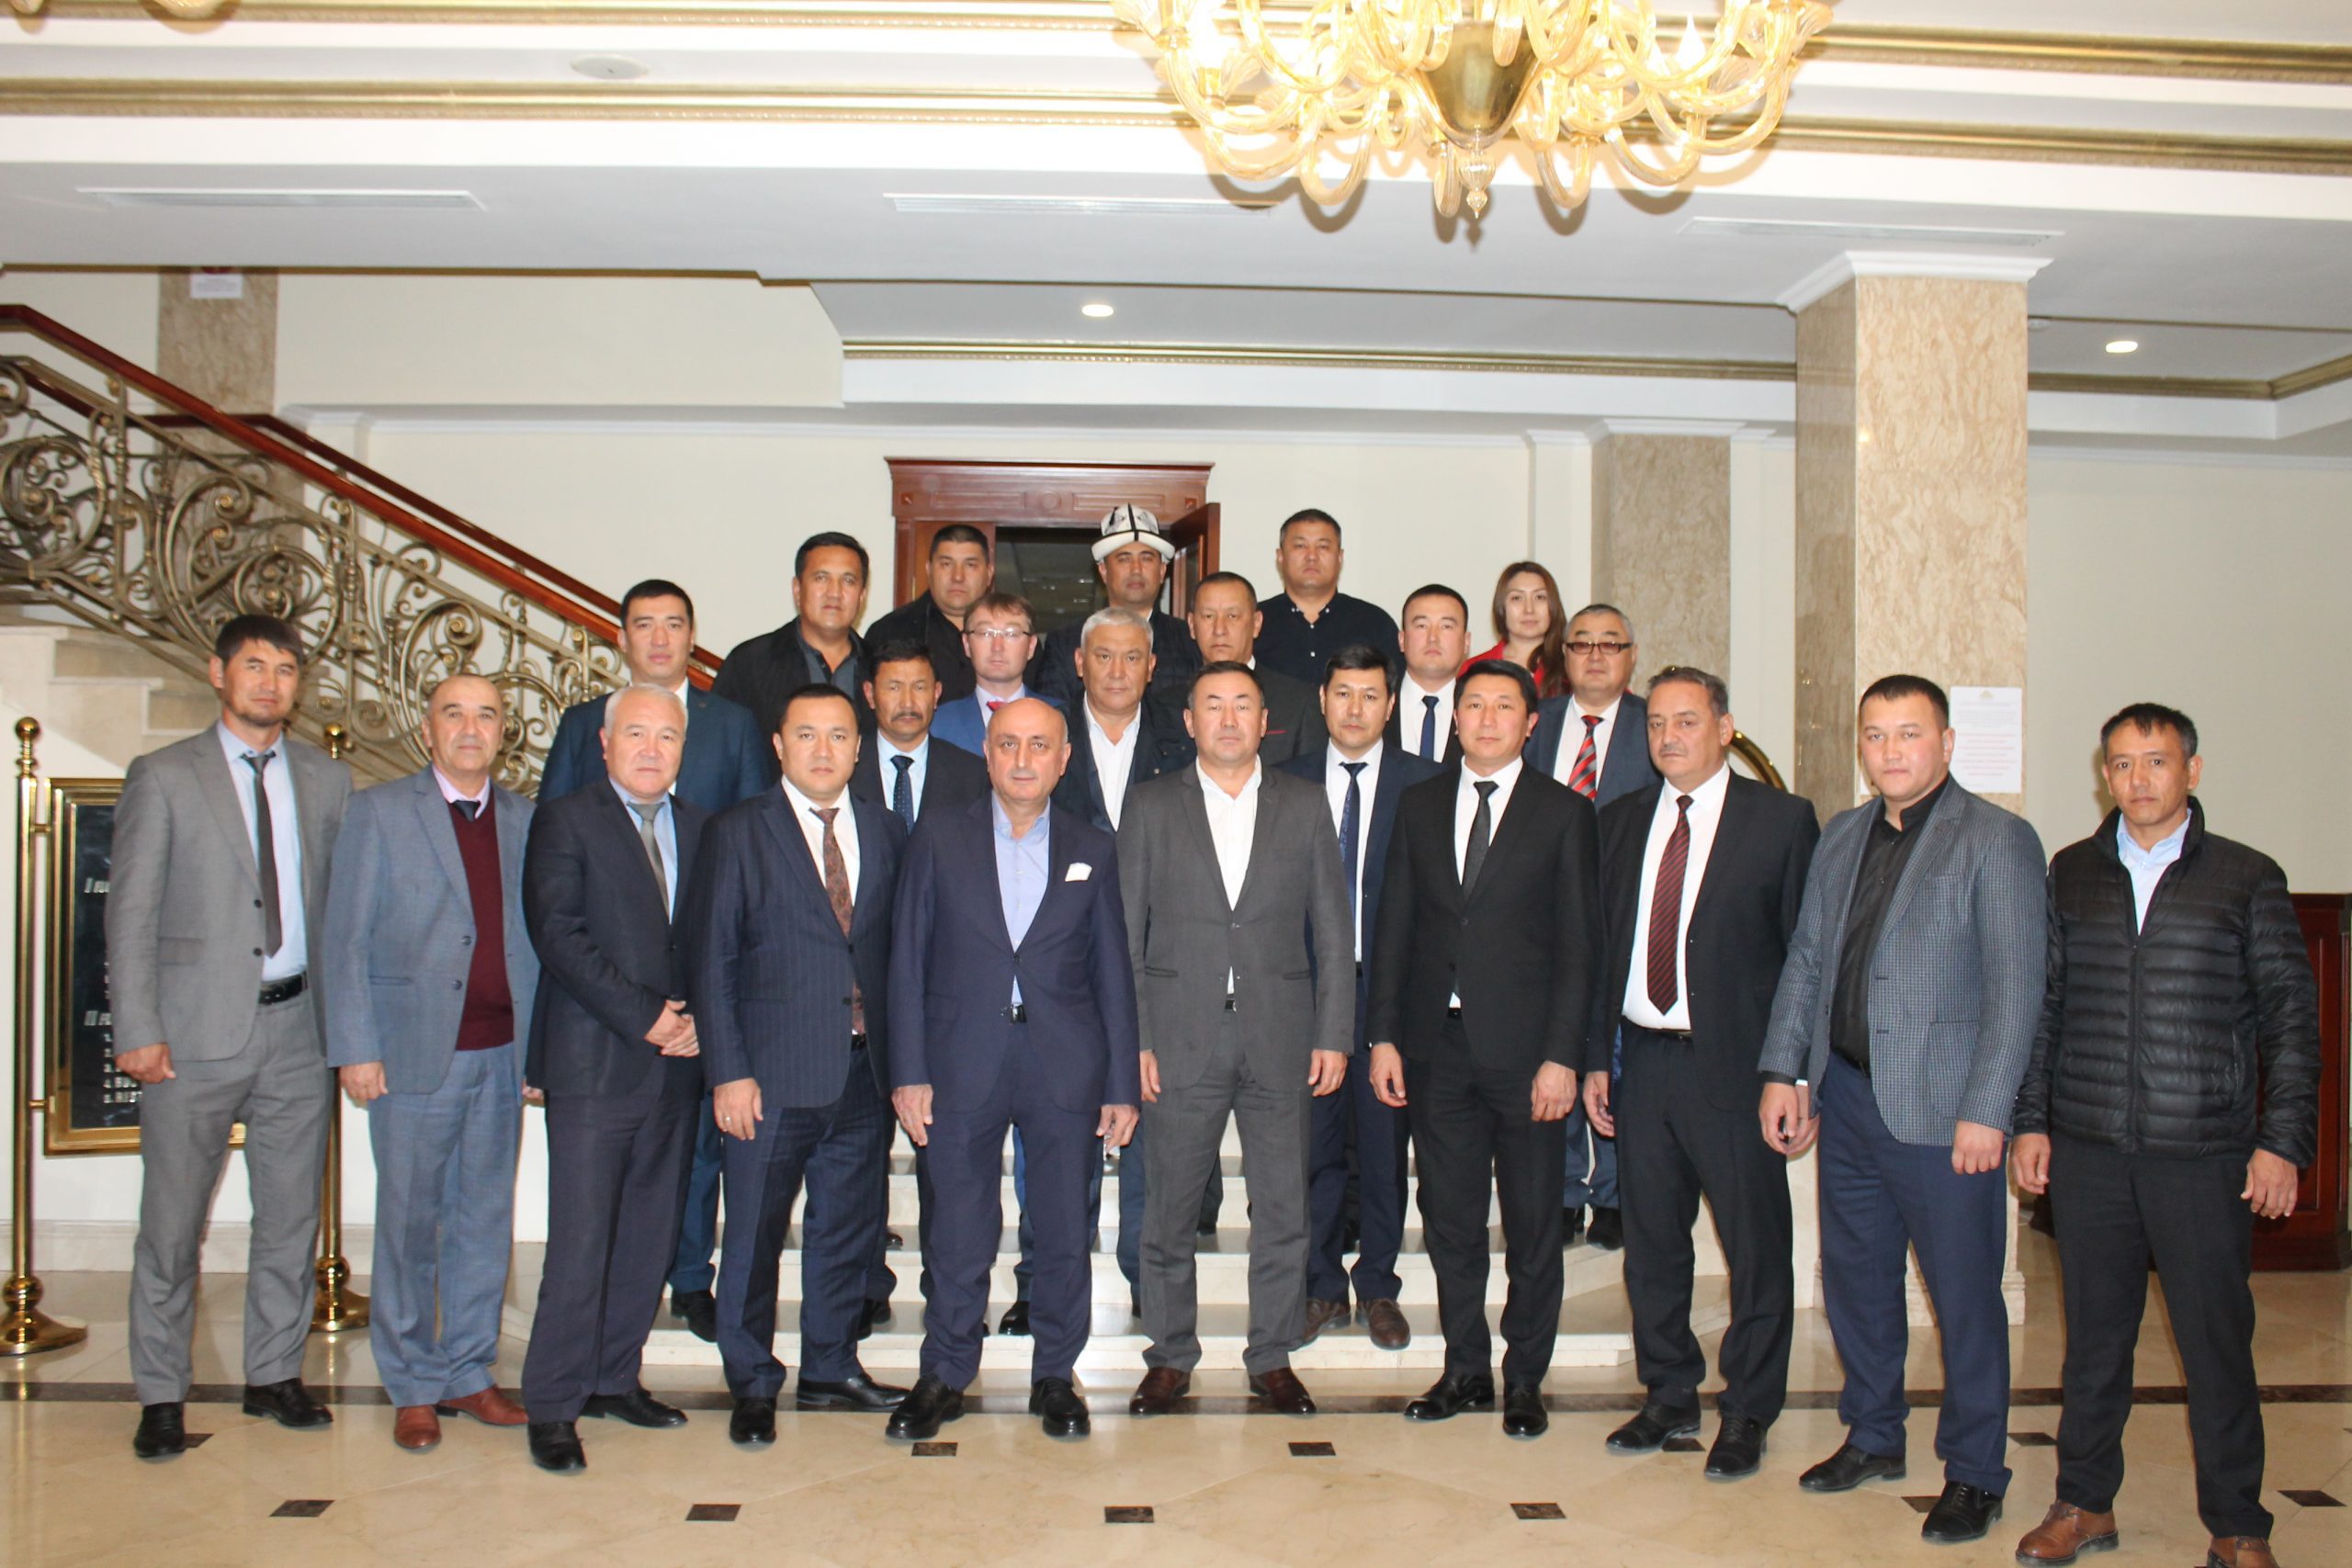 TDBB Kırgızistan Üye Belediyeler Koordinasyon Toplantısı Bişkek’te Yapıldı. TDBB /TURKİSHFORUM - ABDULLAH TÜRER YENER - kirgizistanturkbelediyeler